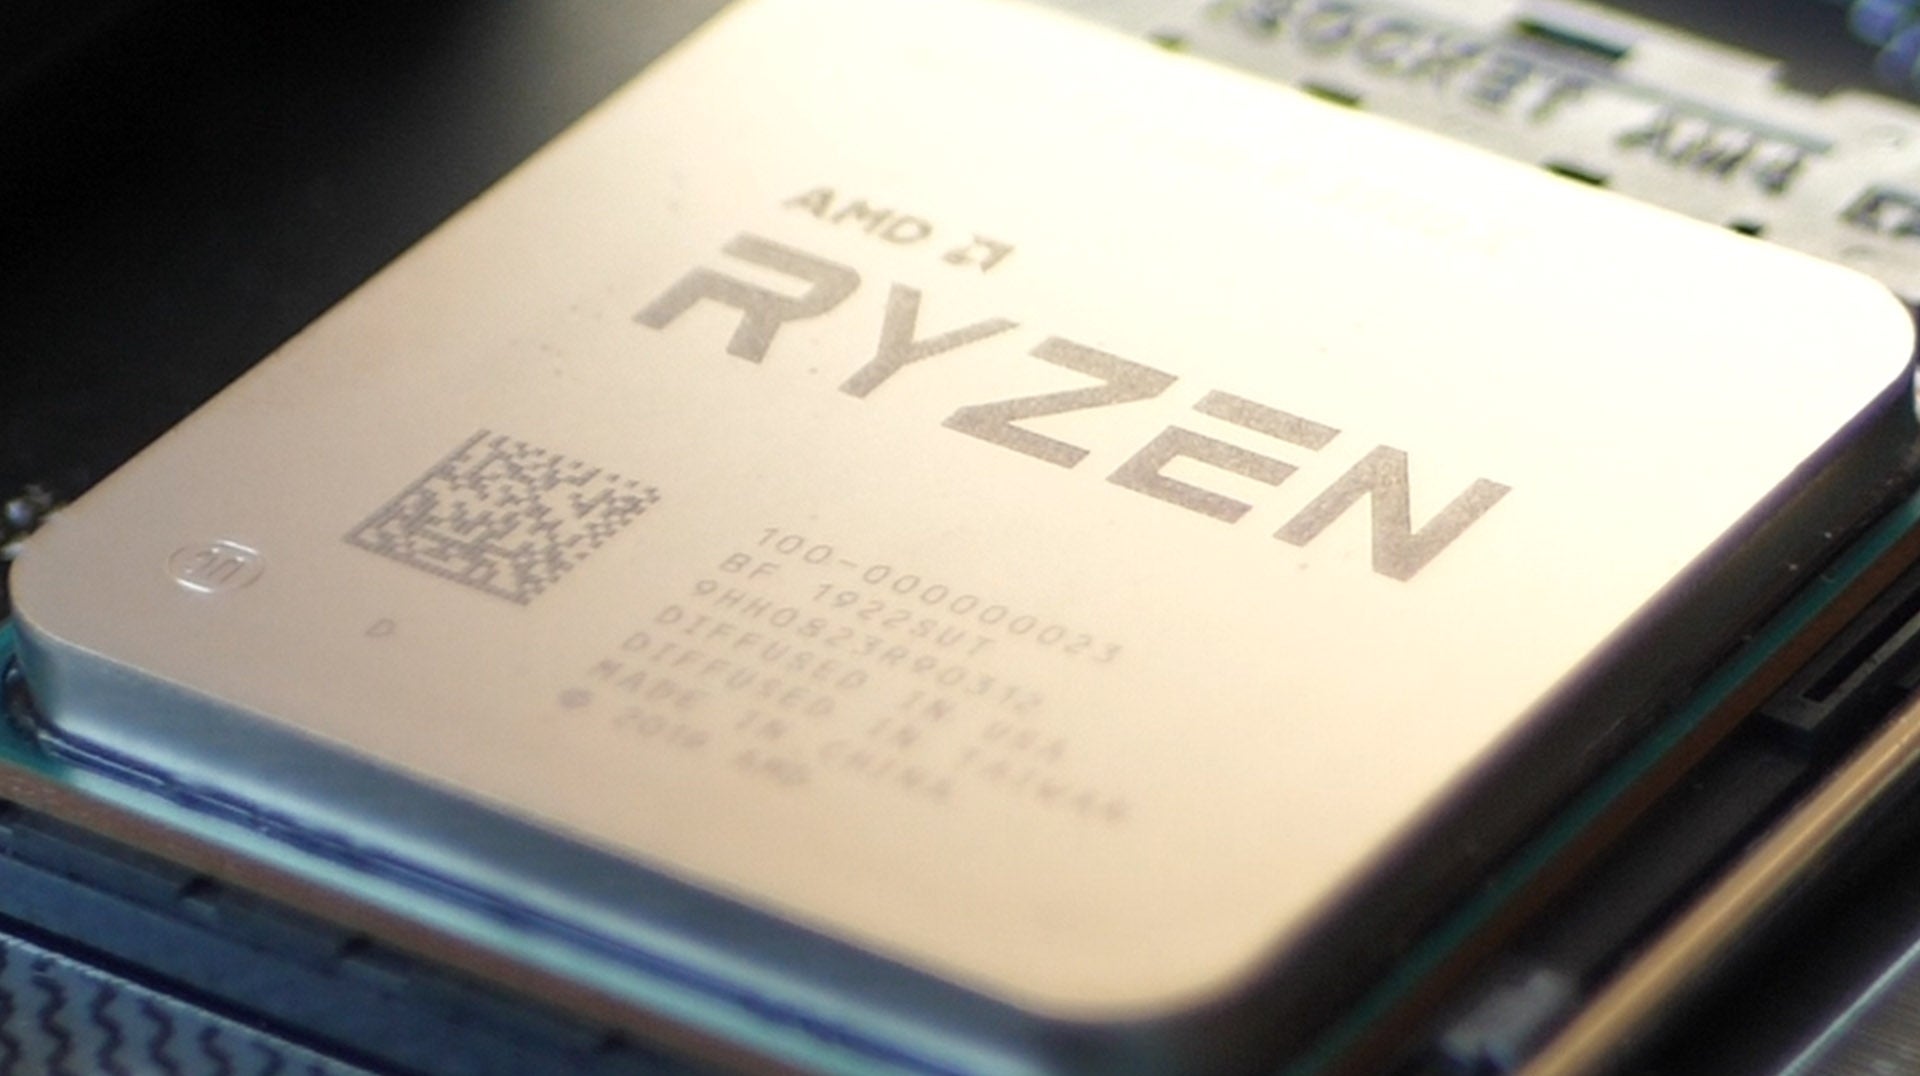 AMD Ryzen 9 3900XT and Ryzen 7 3800XT review: microevolution